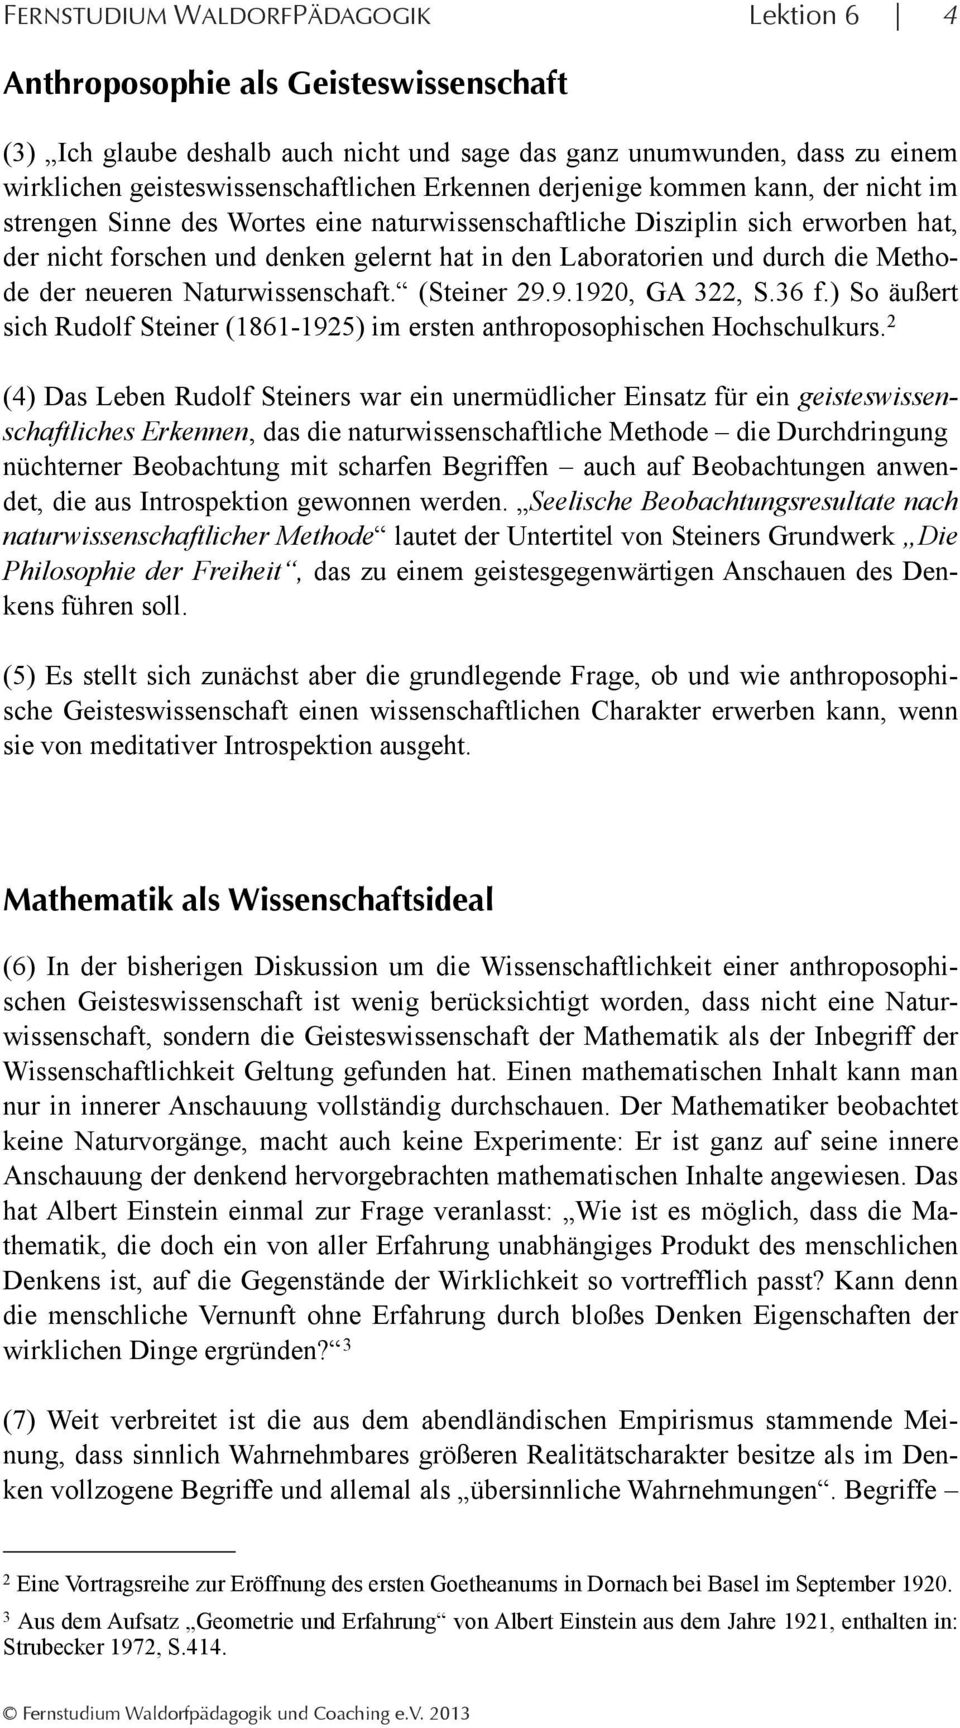 die Methode der neueren Naturwissenschaft. (Steiner 29.9.1920, GA 322, S.36 f.) So äußert sich Rudolf Steiner (1861-1925) im ersten anthroposophischen Hochschulkurs.